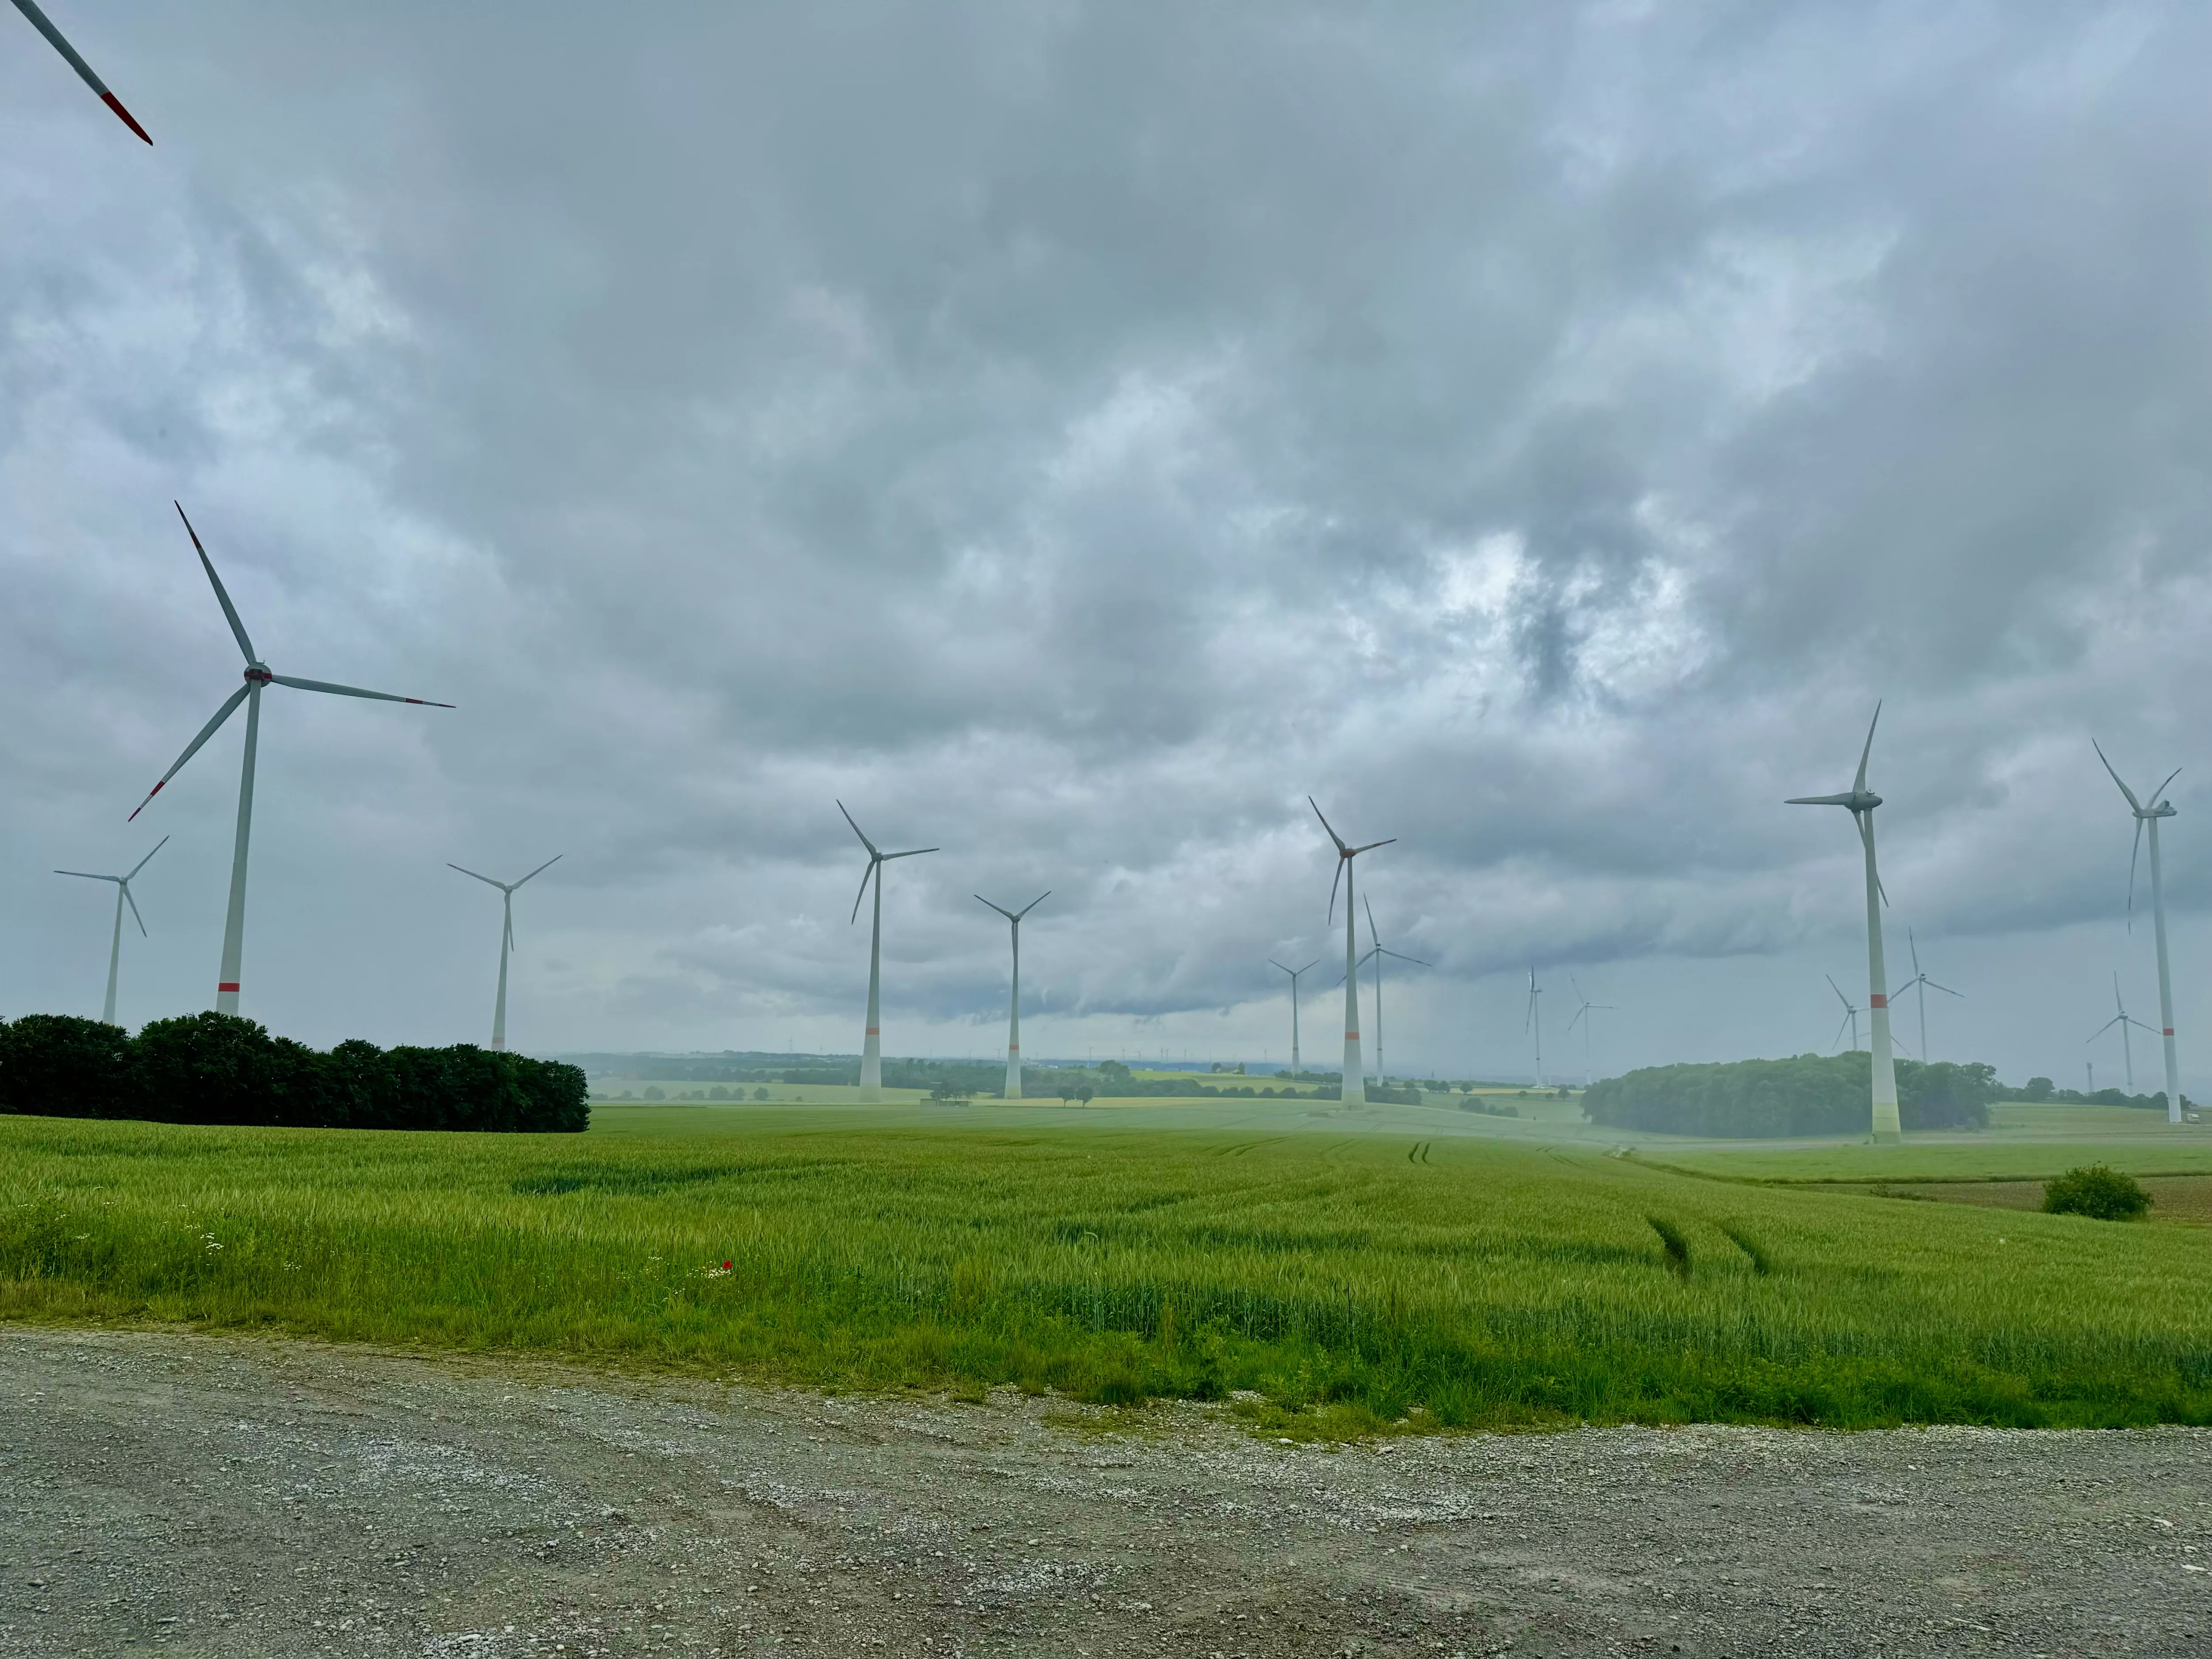 Wind turbines and rain